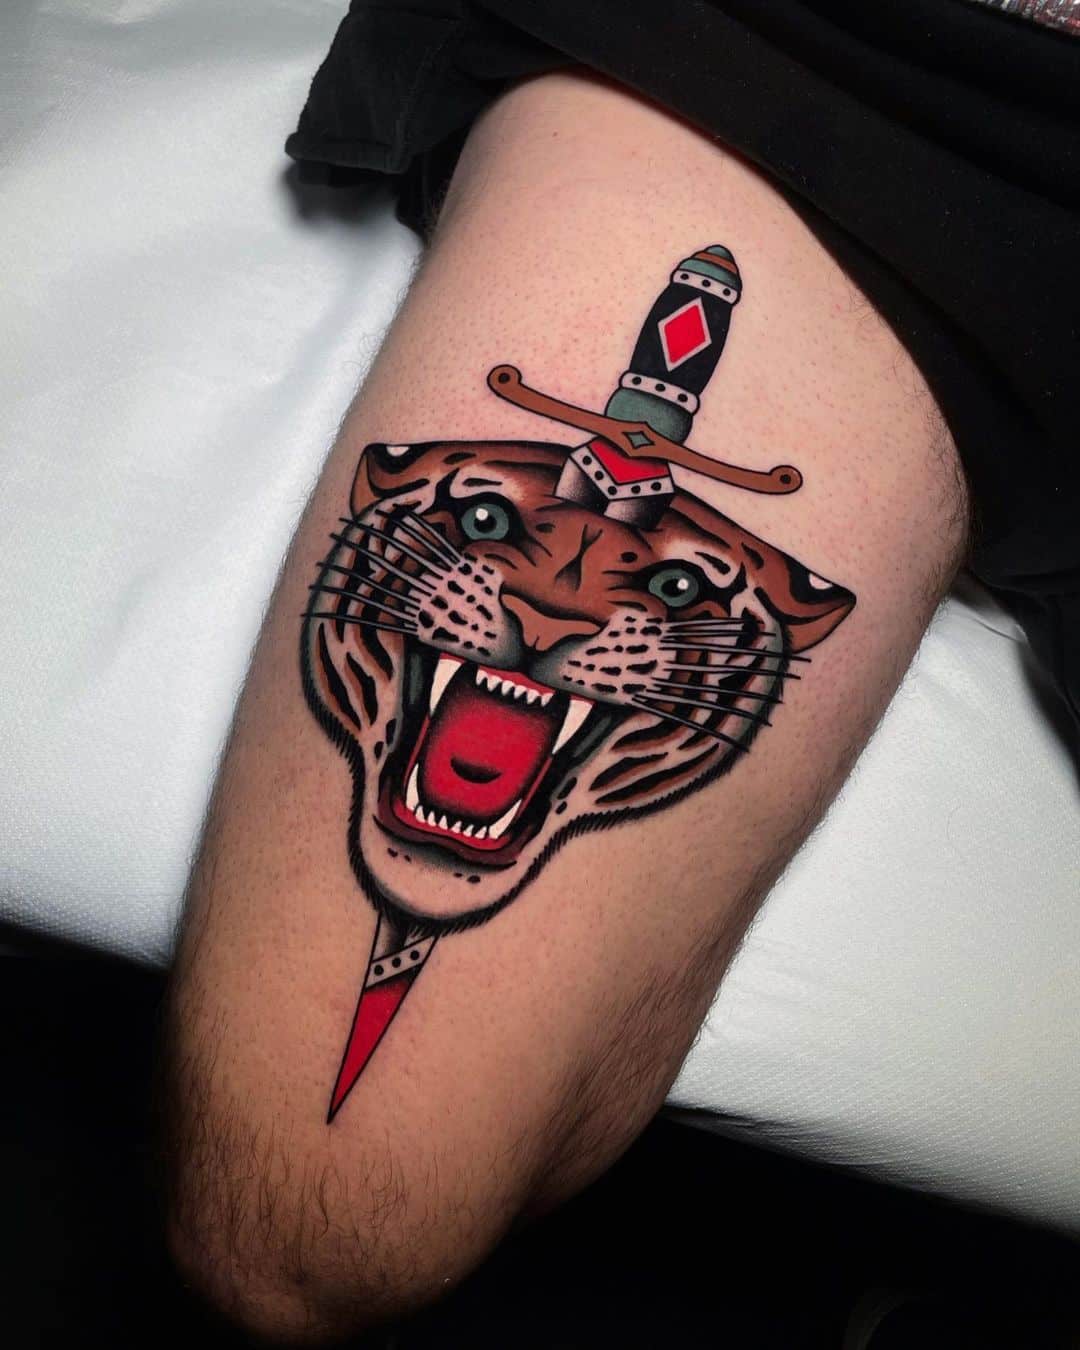 Tiger tattoo by tommigiova tattooer